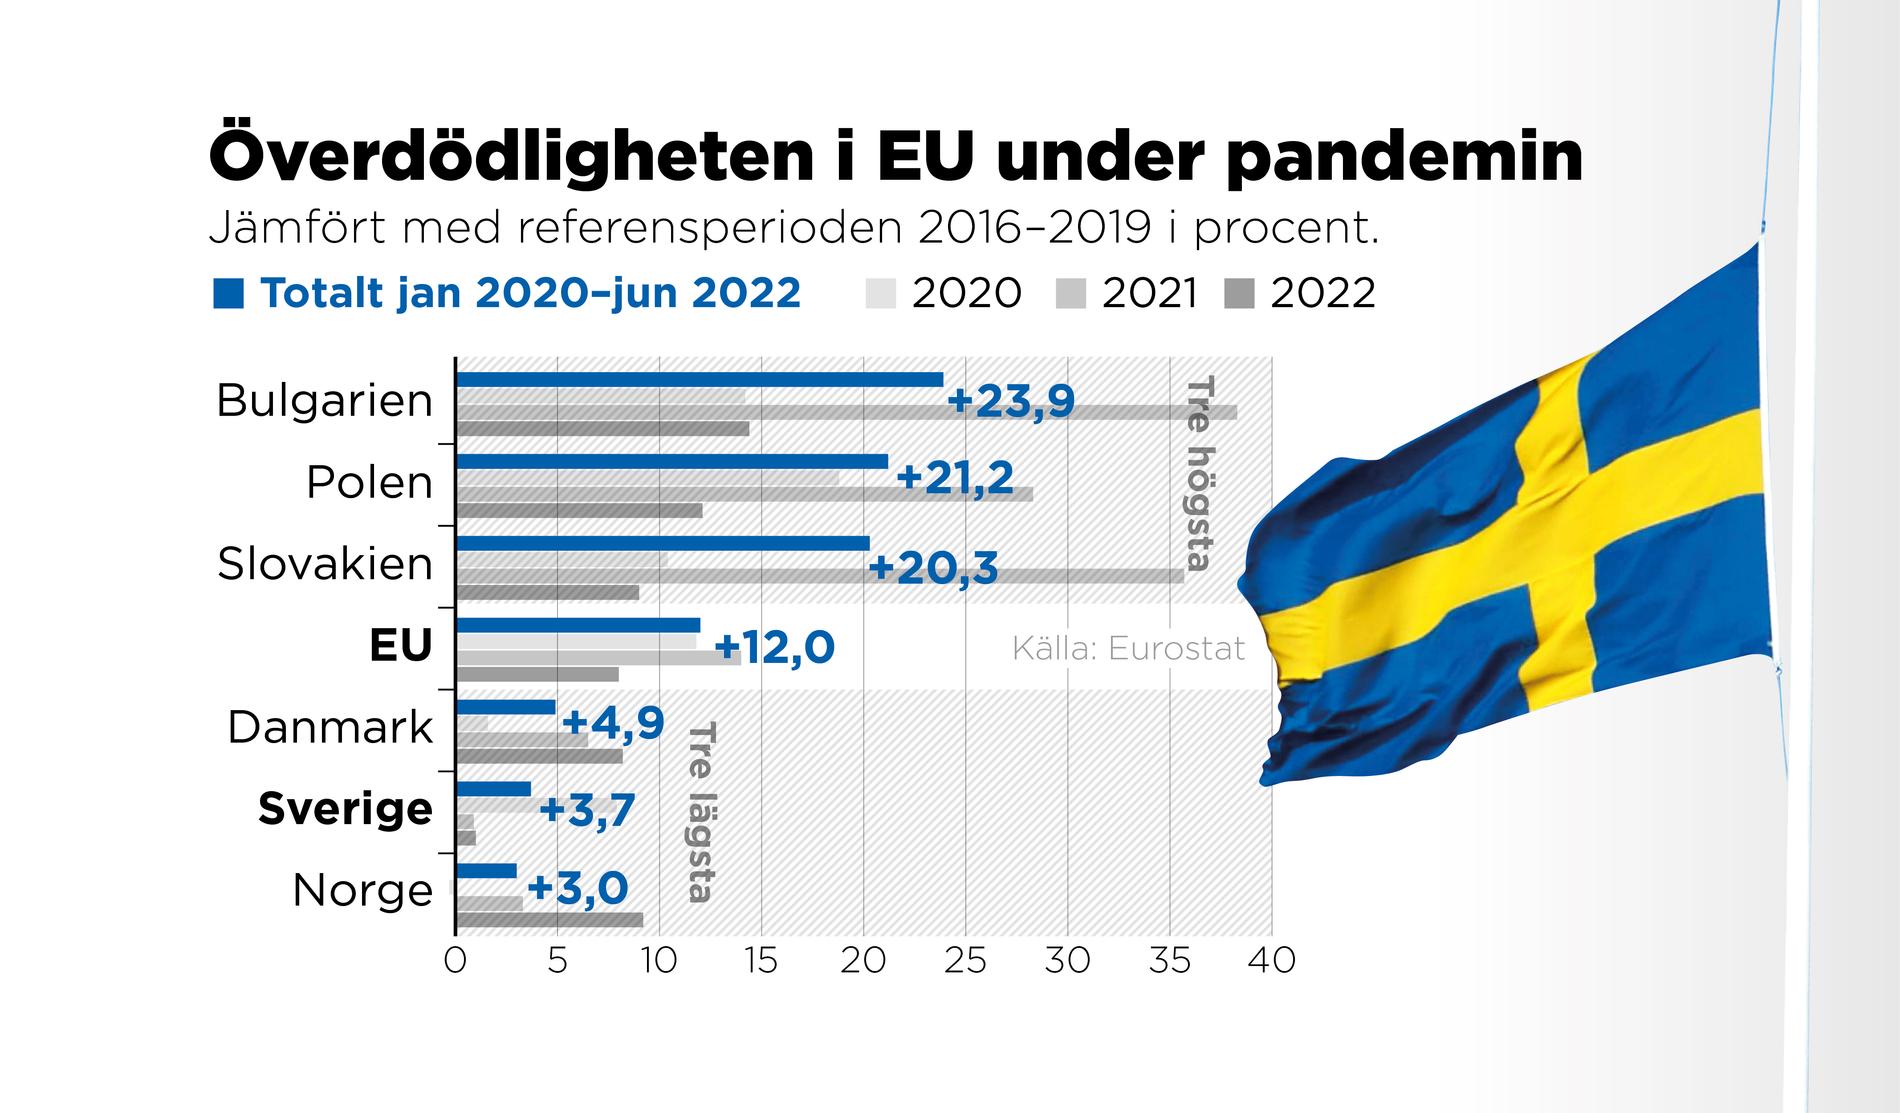 Sverige har haft Europas lägsta överdödlighet sedan januari 2021 enligt statistik från EU:s statistikorgan Eurostat.